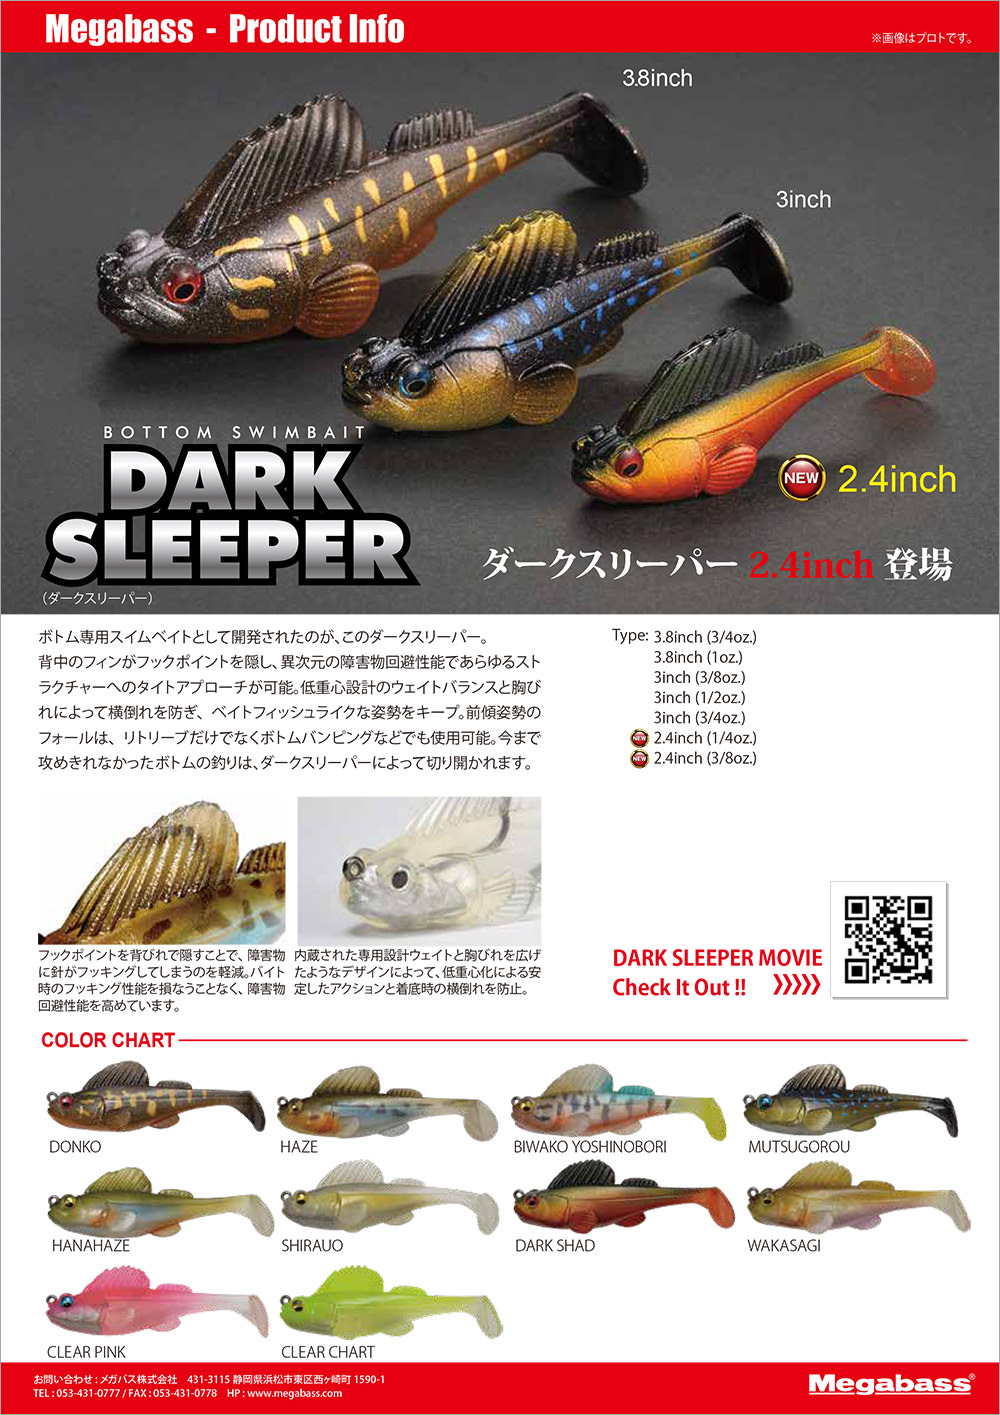 DARK SLEEPER(ダークスリーパー) 2.4inch 3/8oz. シラウオ ルアー 